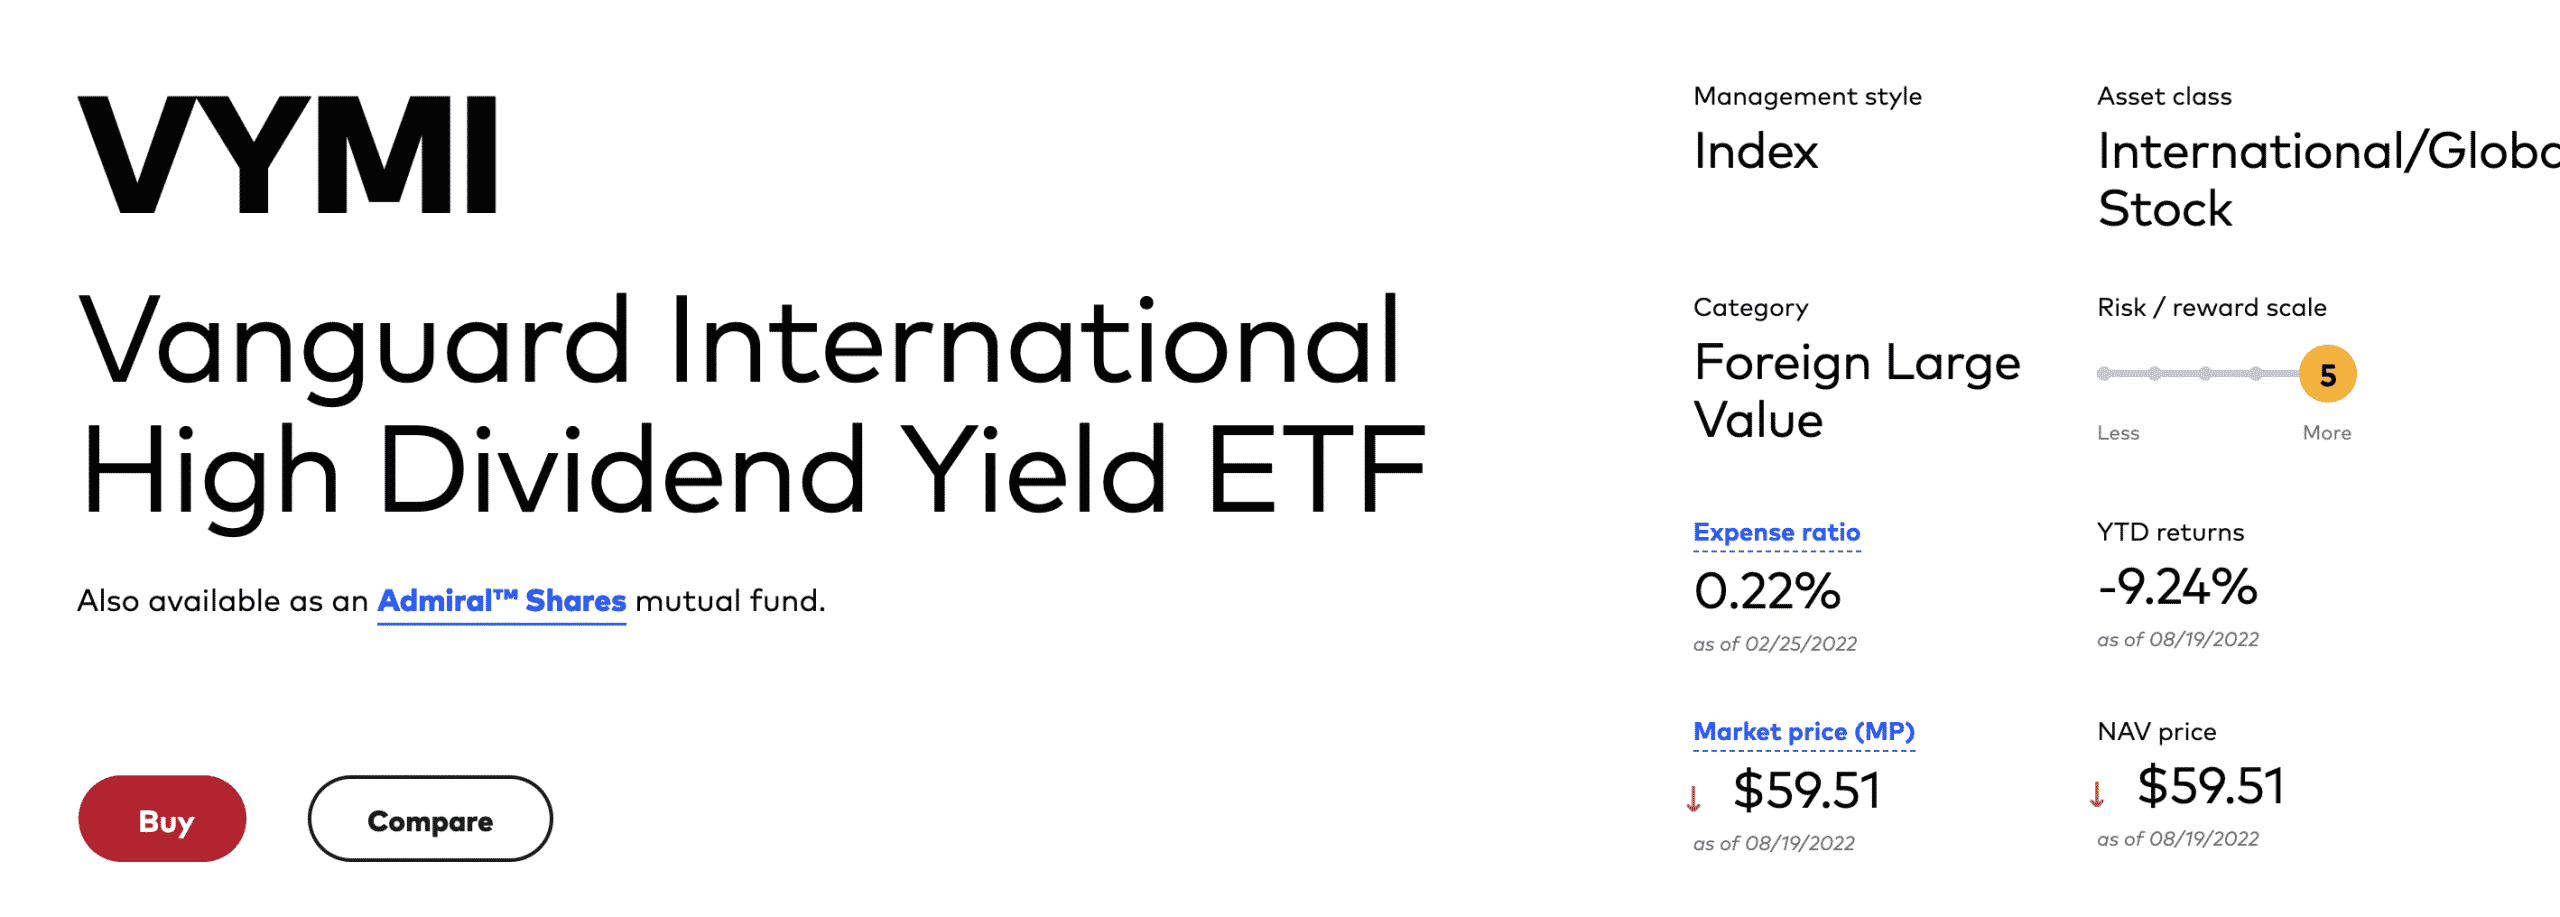 Vanguard International High Dividend Yield ETF